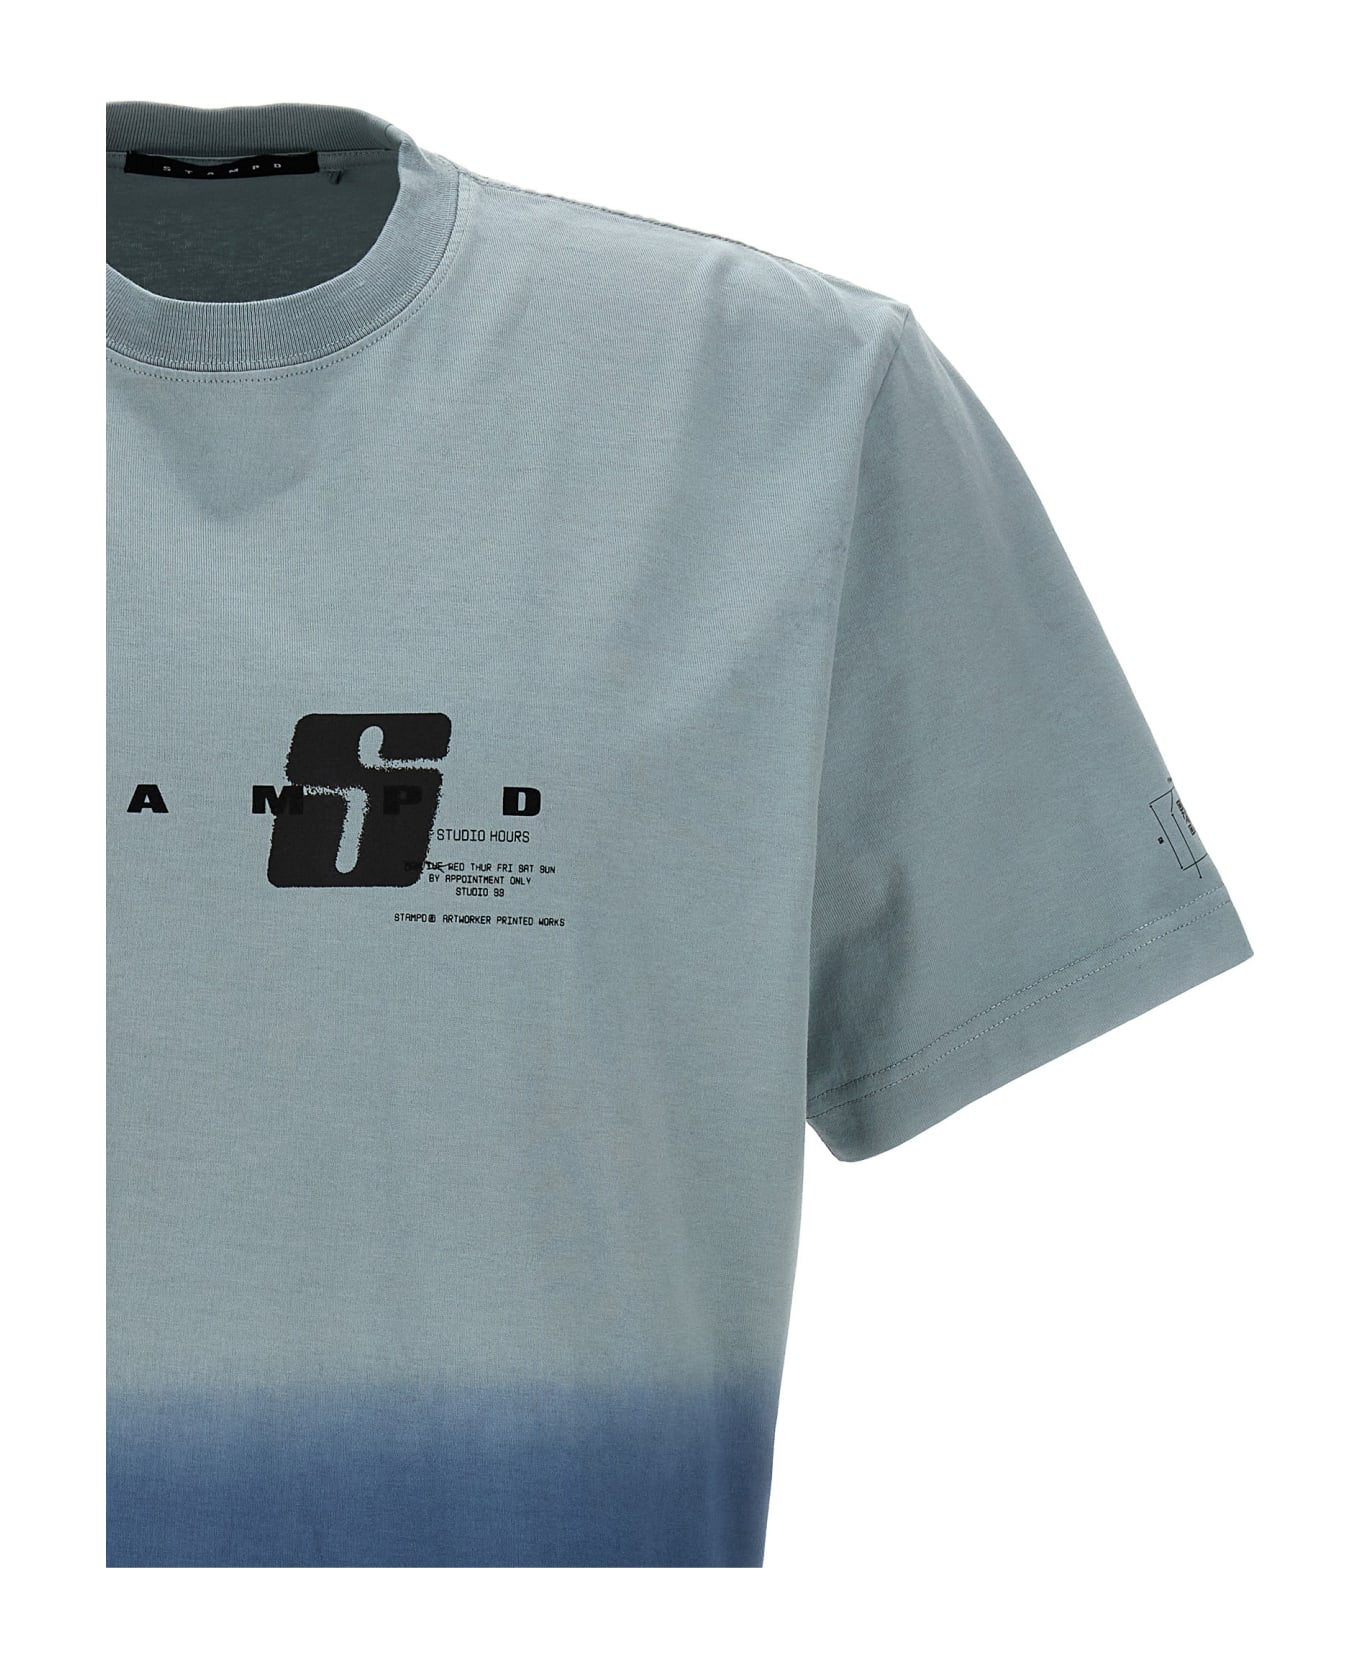 Stampd 'elevation Transit' T-shirt - Light Blue シャツ